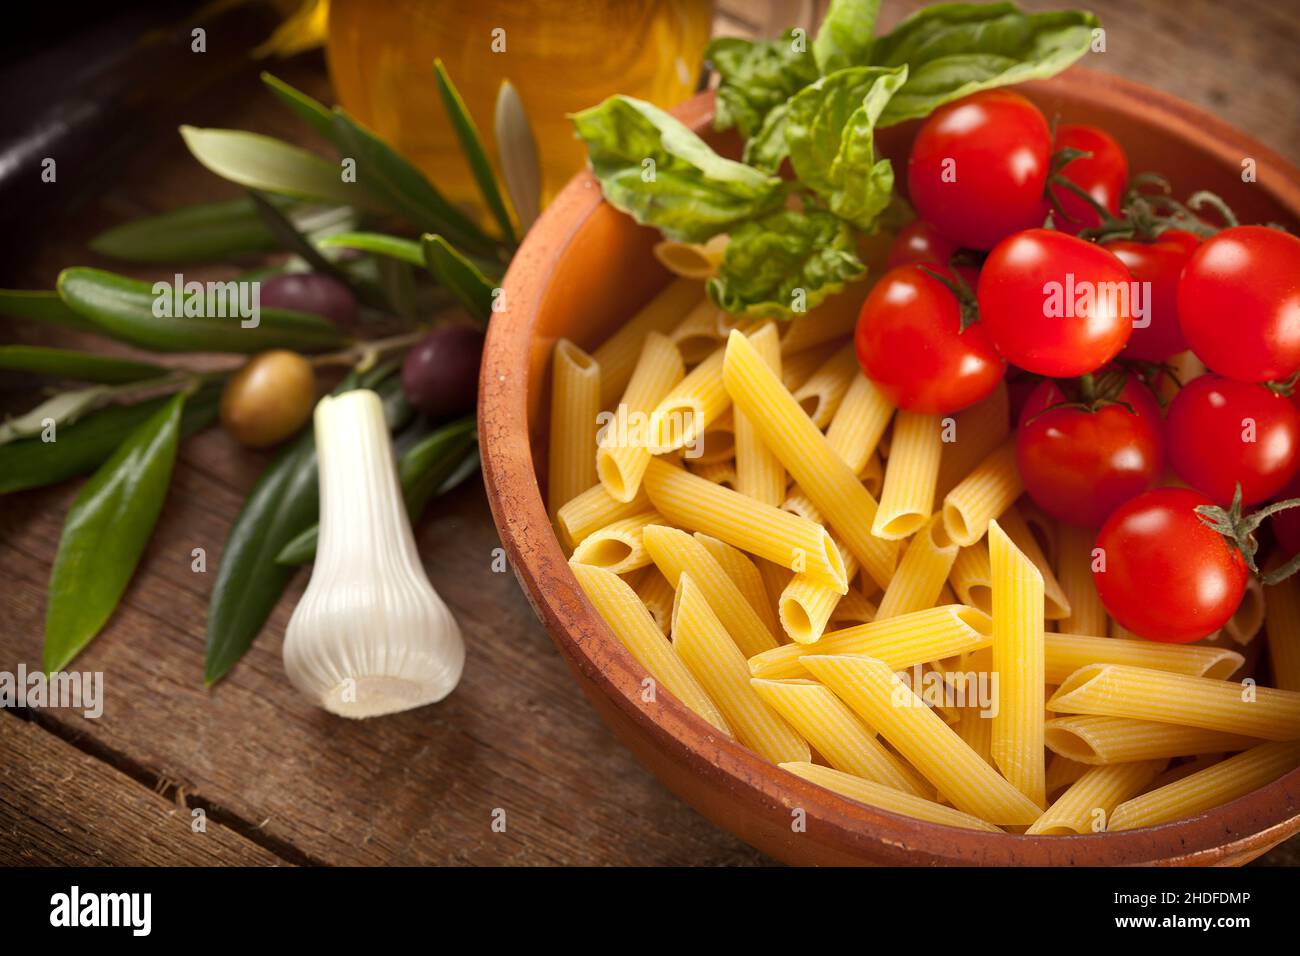 garlic, tomatoes, pasta, ingredients, garlics, tomato, noddles, pastas, ingredient Stock Photo